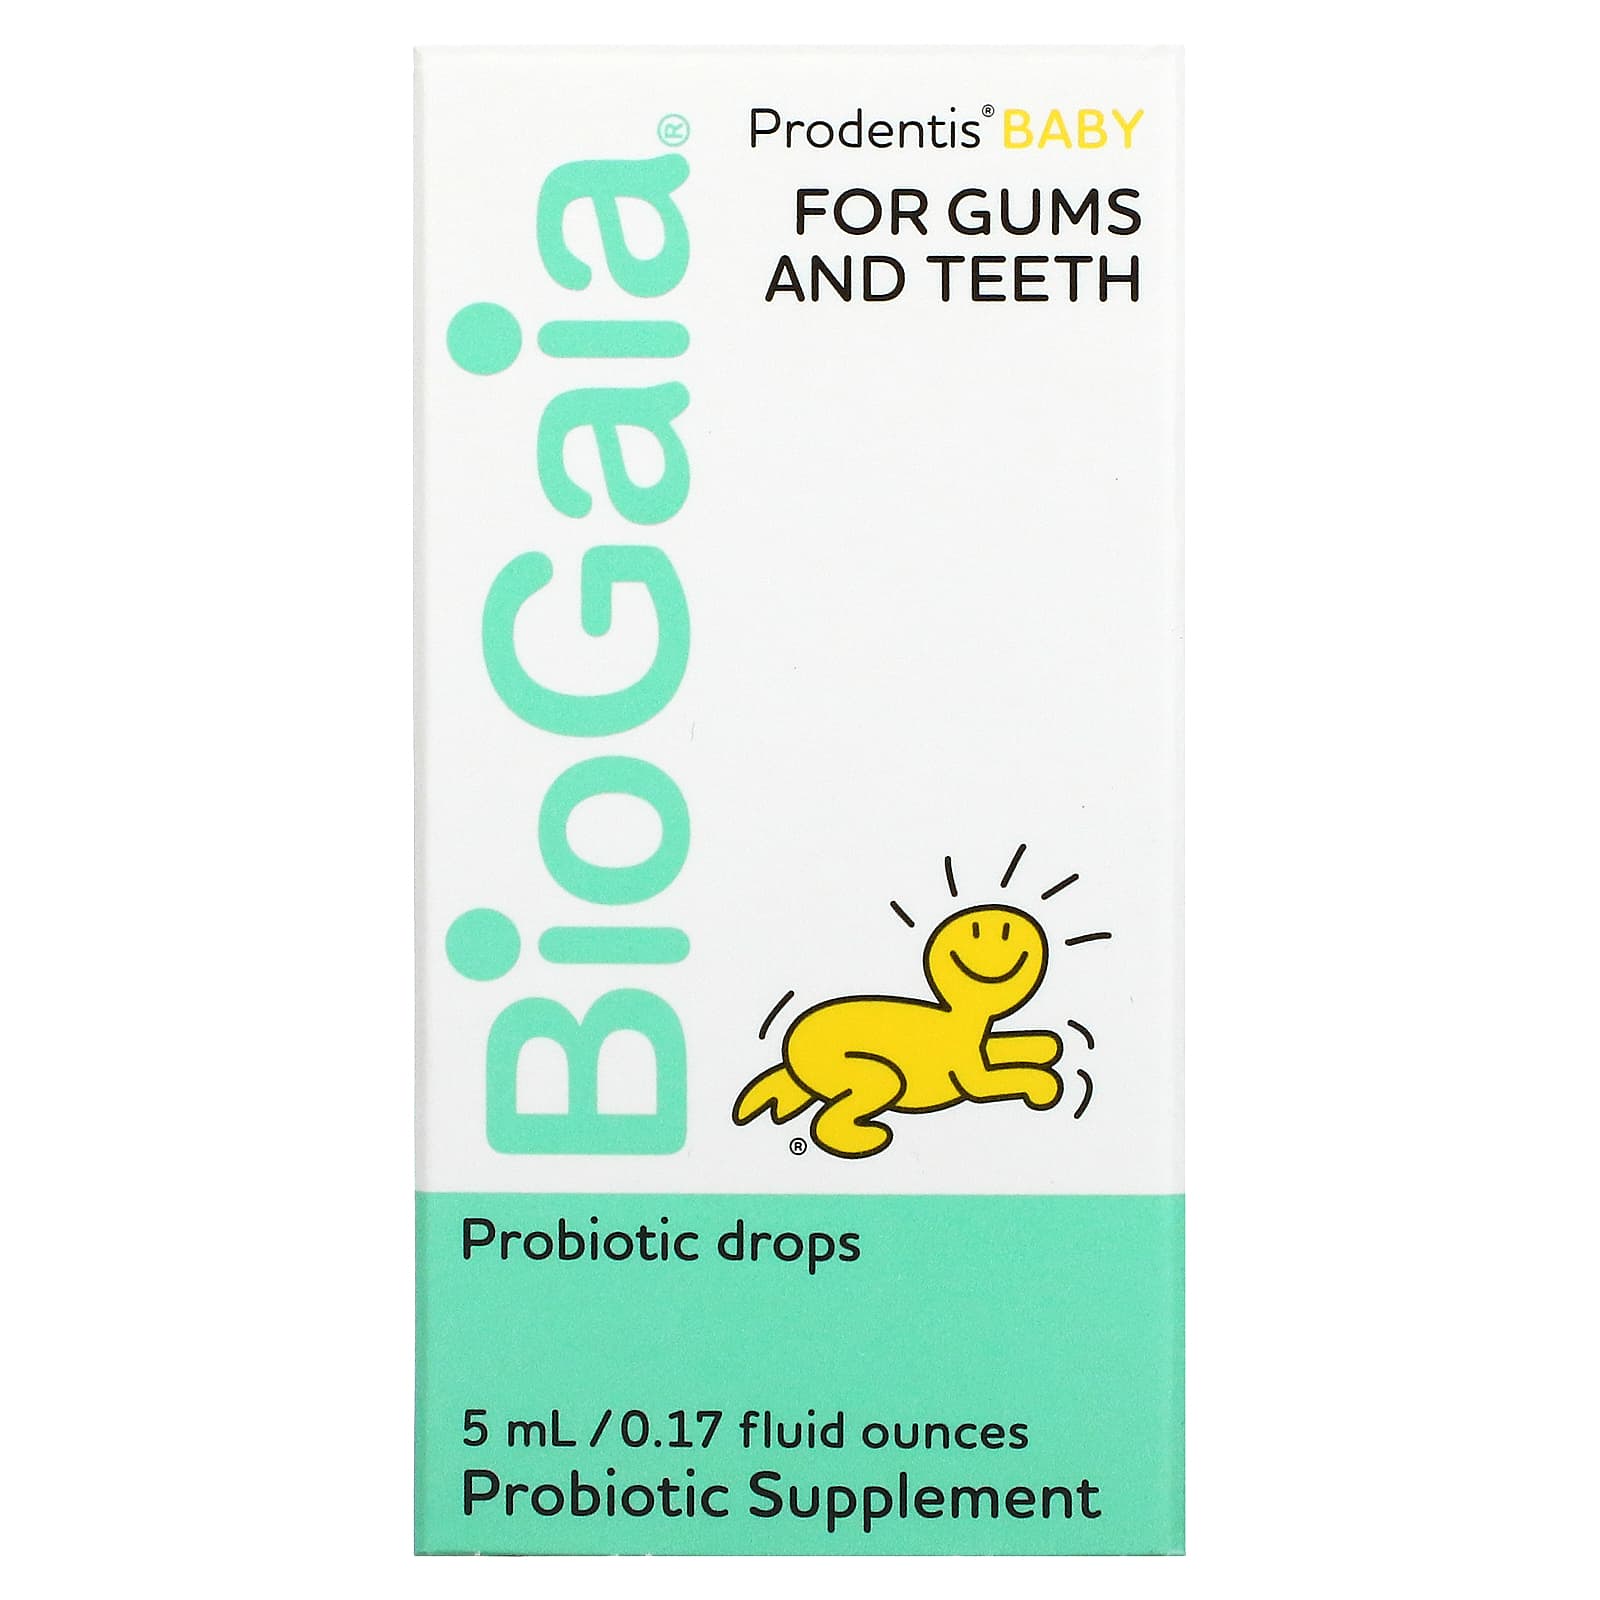 Пробиотические Капли BioGaia для десен и зубов, 5 мл protectis baby пробиотические капли 0 17 жидкой унции 5 мл biogaia